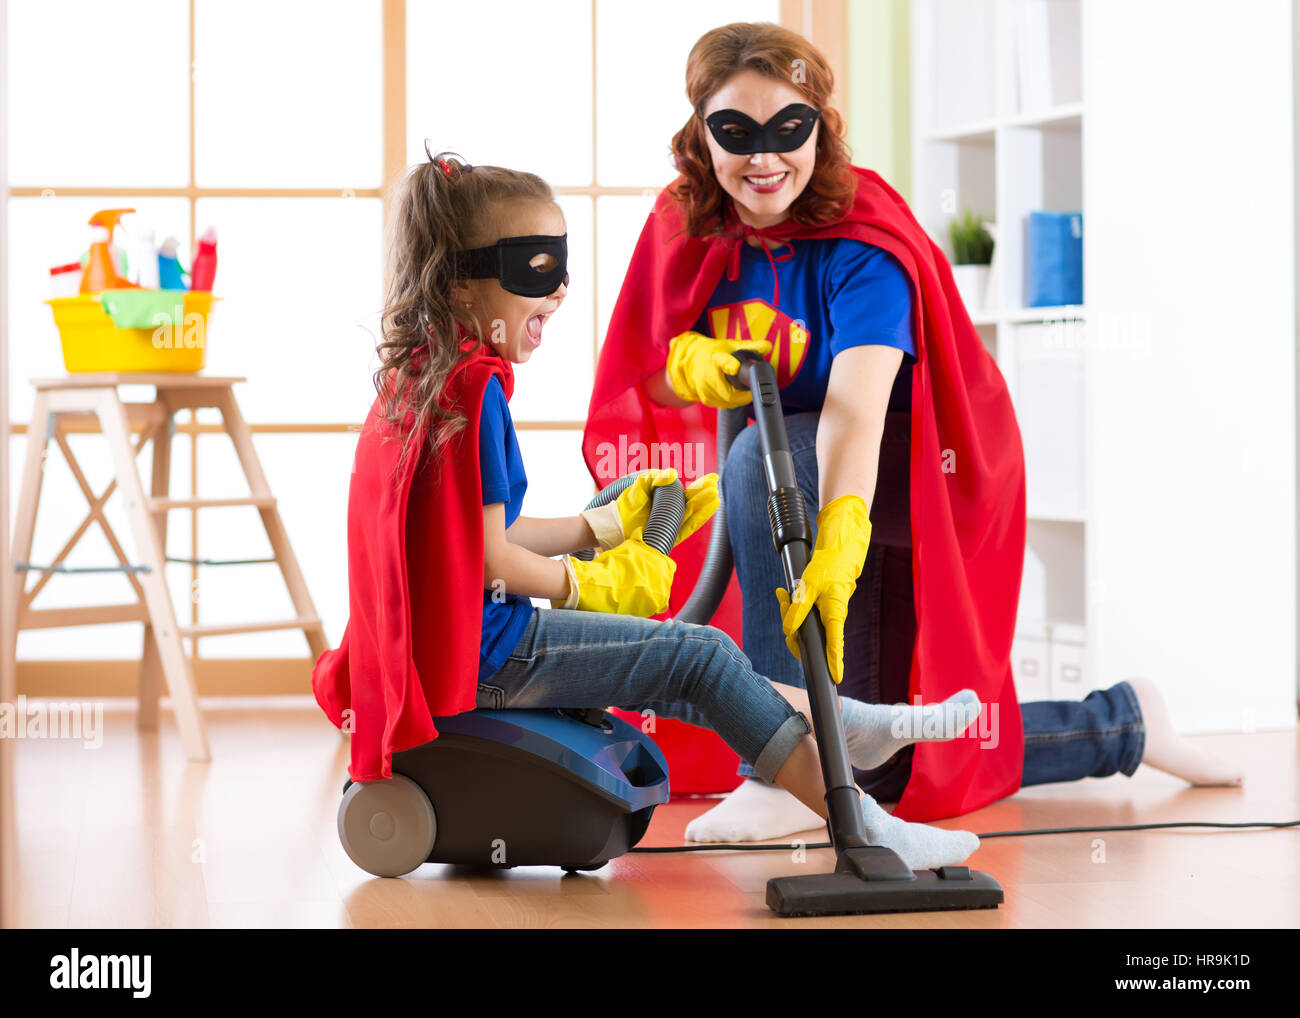 Mère et fille enfant Superhero costumes portés par... Enfant mignon et femme font l'assistant de nettoyage prix et avoir un plaisir. Banque D'Images